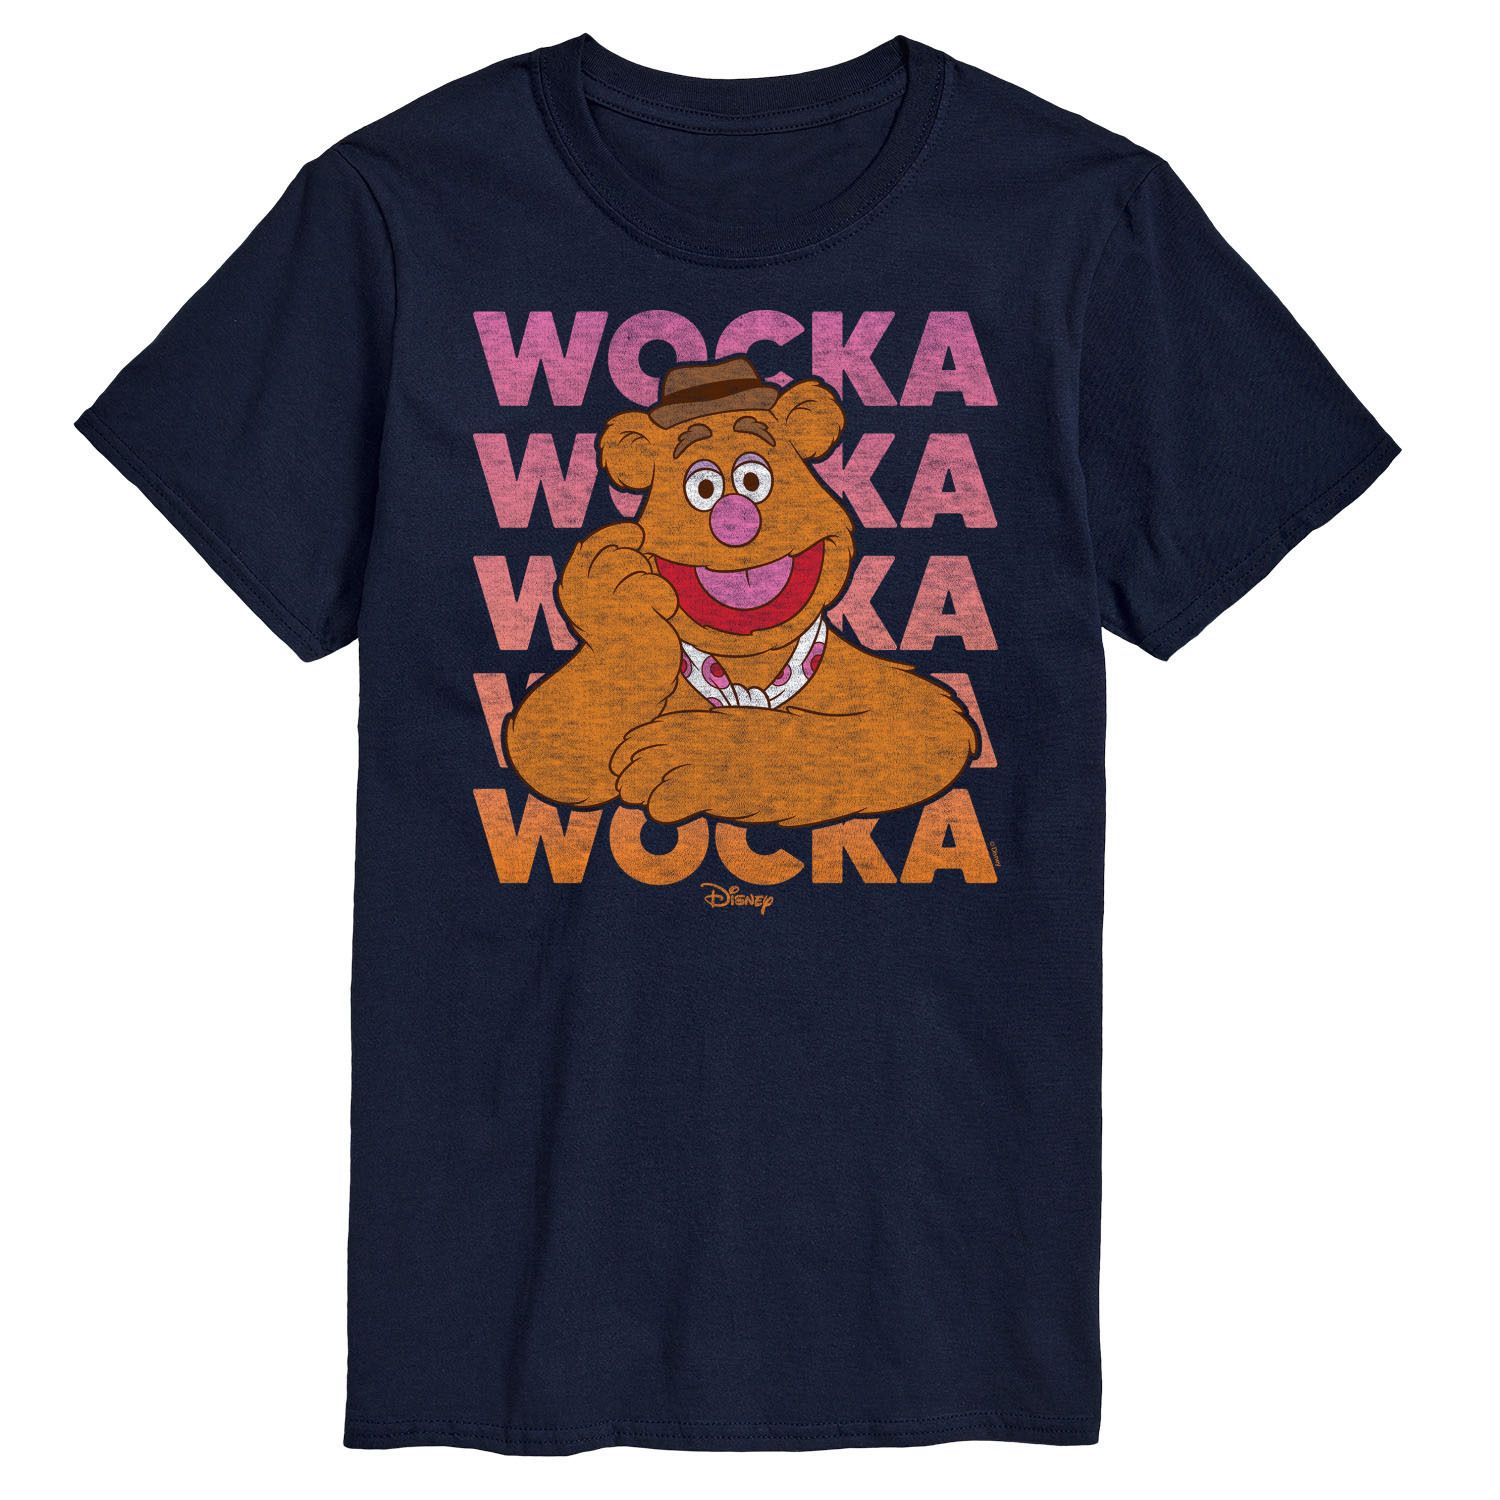 Мужская футболка Disney's The Muppets Wocka Wocka, Синяя Licensed Character, синий